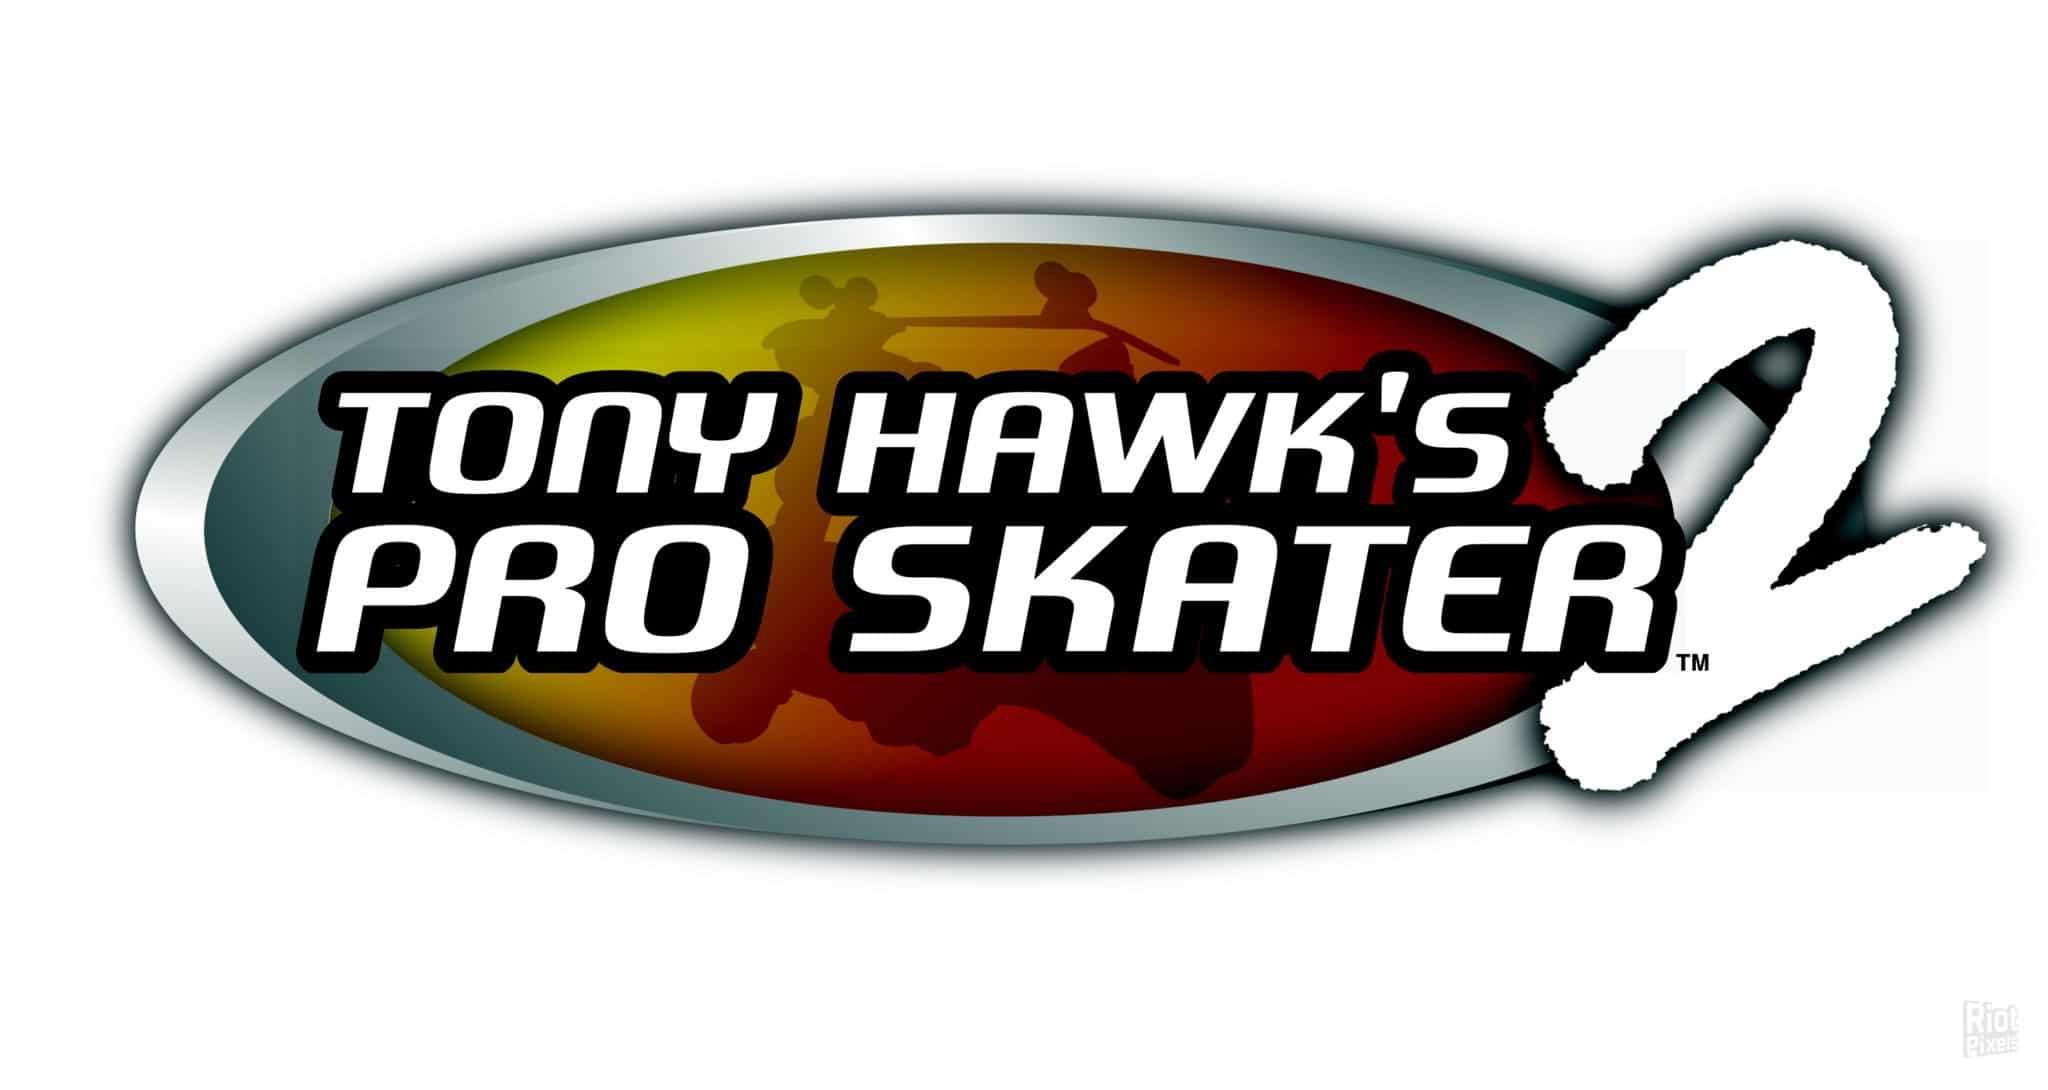 Tony Hawk's Pro Skater 2 Logo